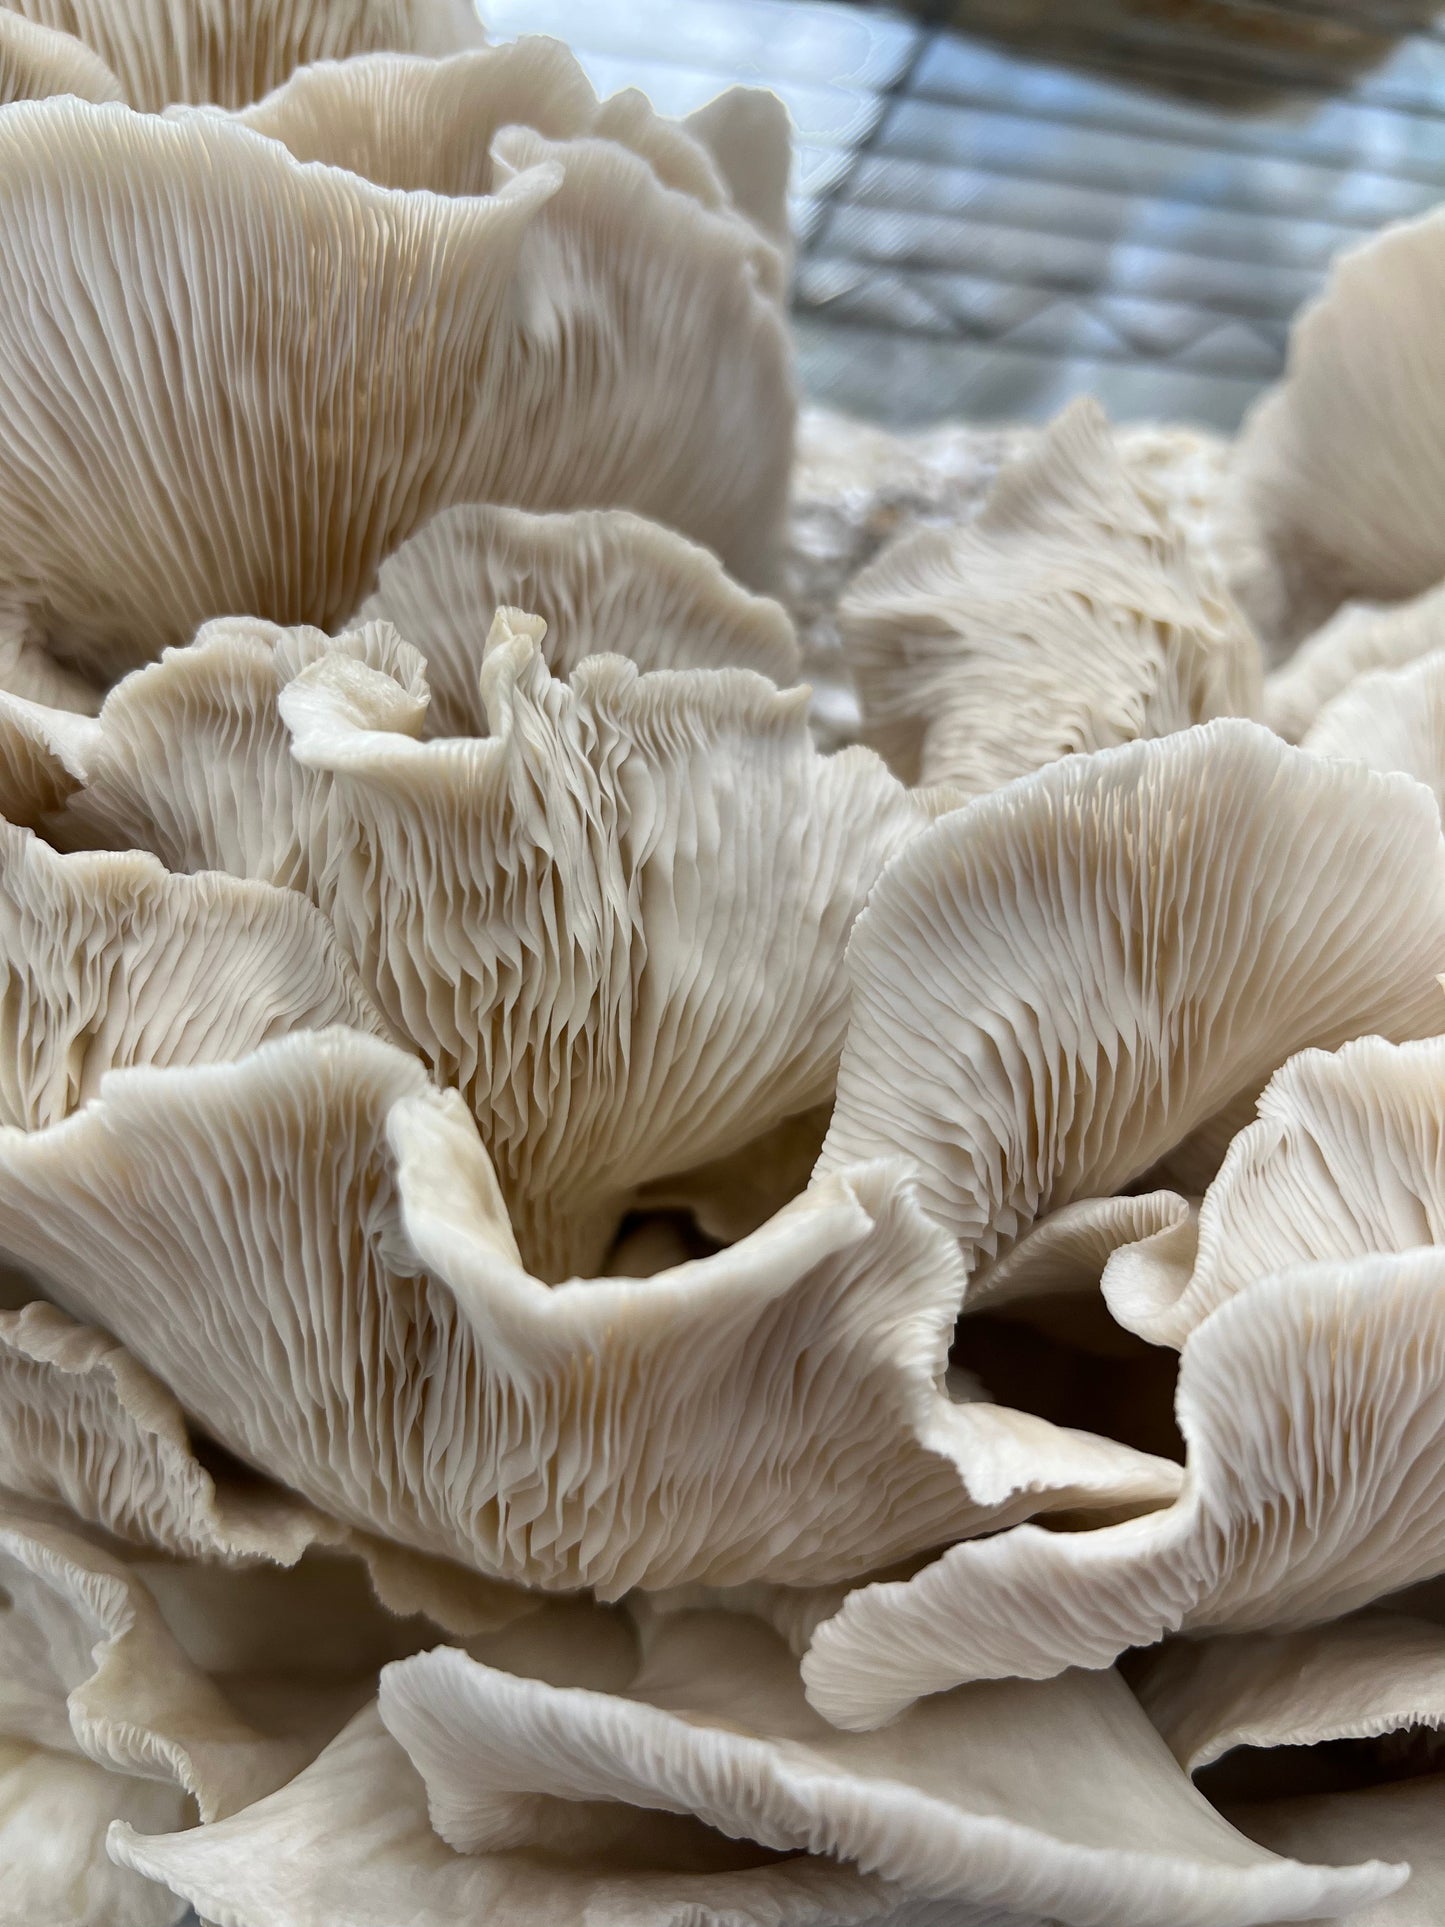 Dried Pathfinder Oyster Mushrooms / Pleurotus ostreatus